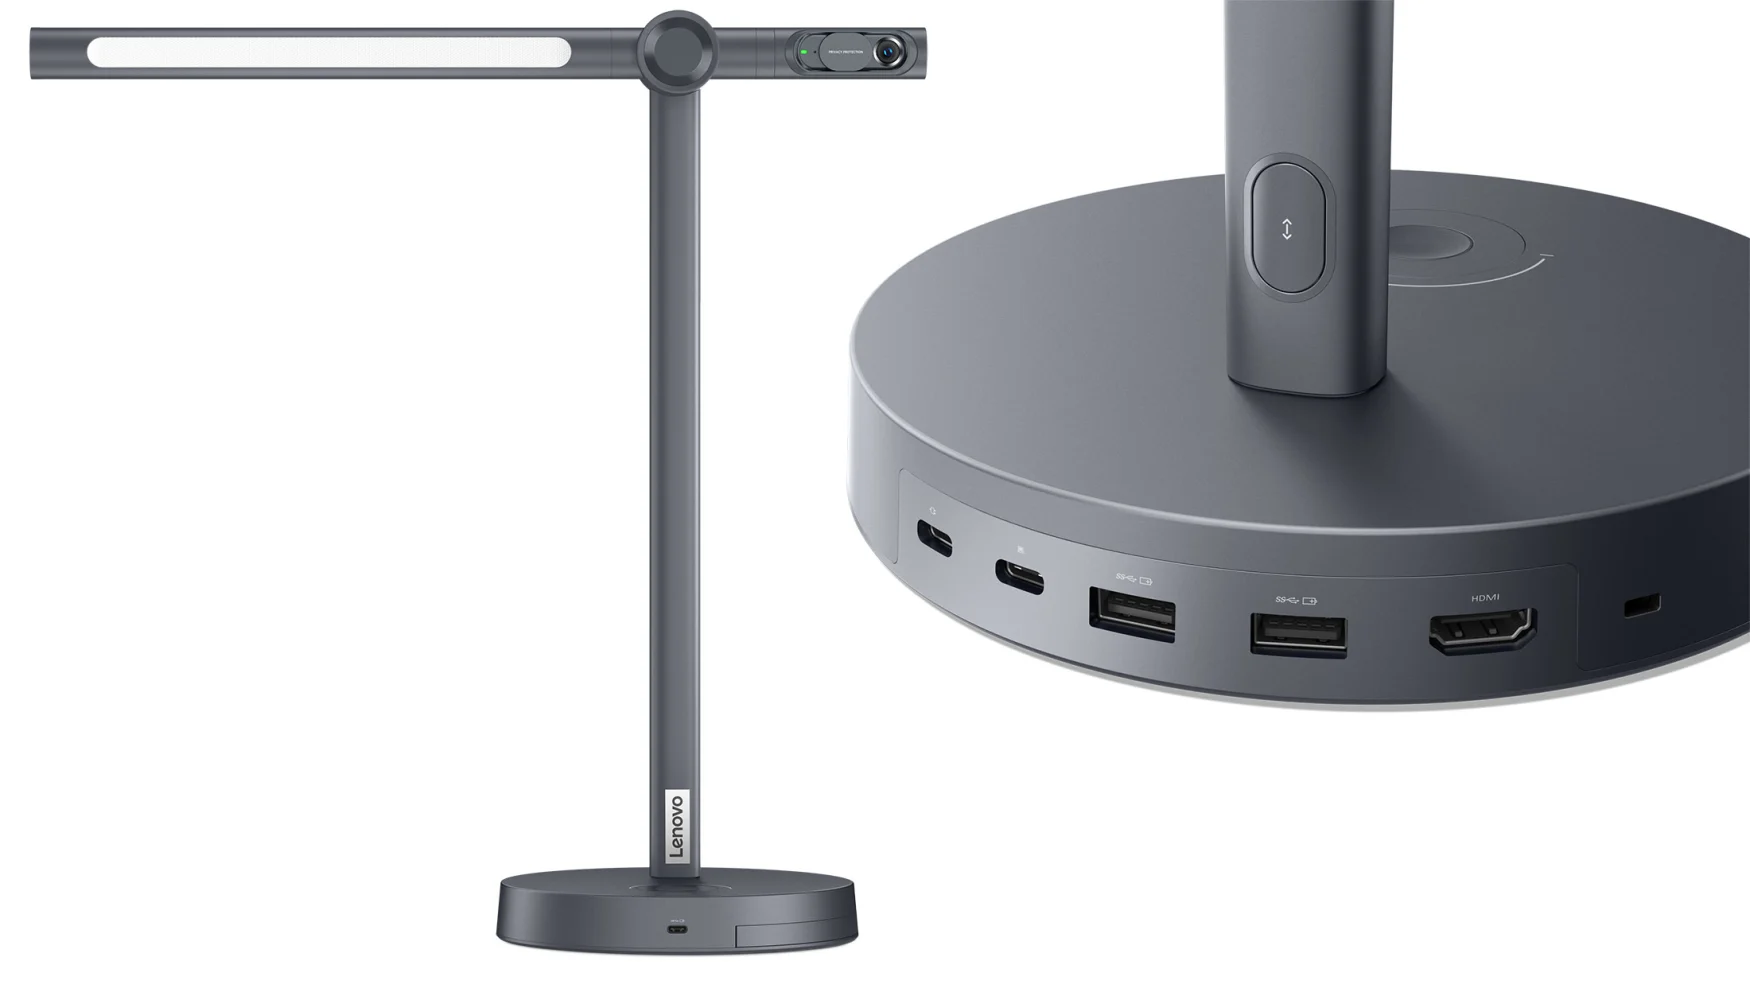 Die Schreibtischlampe von Lenovo verfügt über eine integrierte Webcam, ein kabelloses Ladegerät und eine Leistungsaufnahme von 135 W